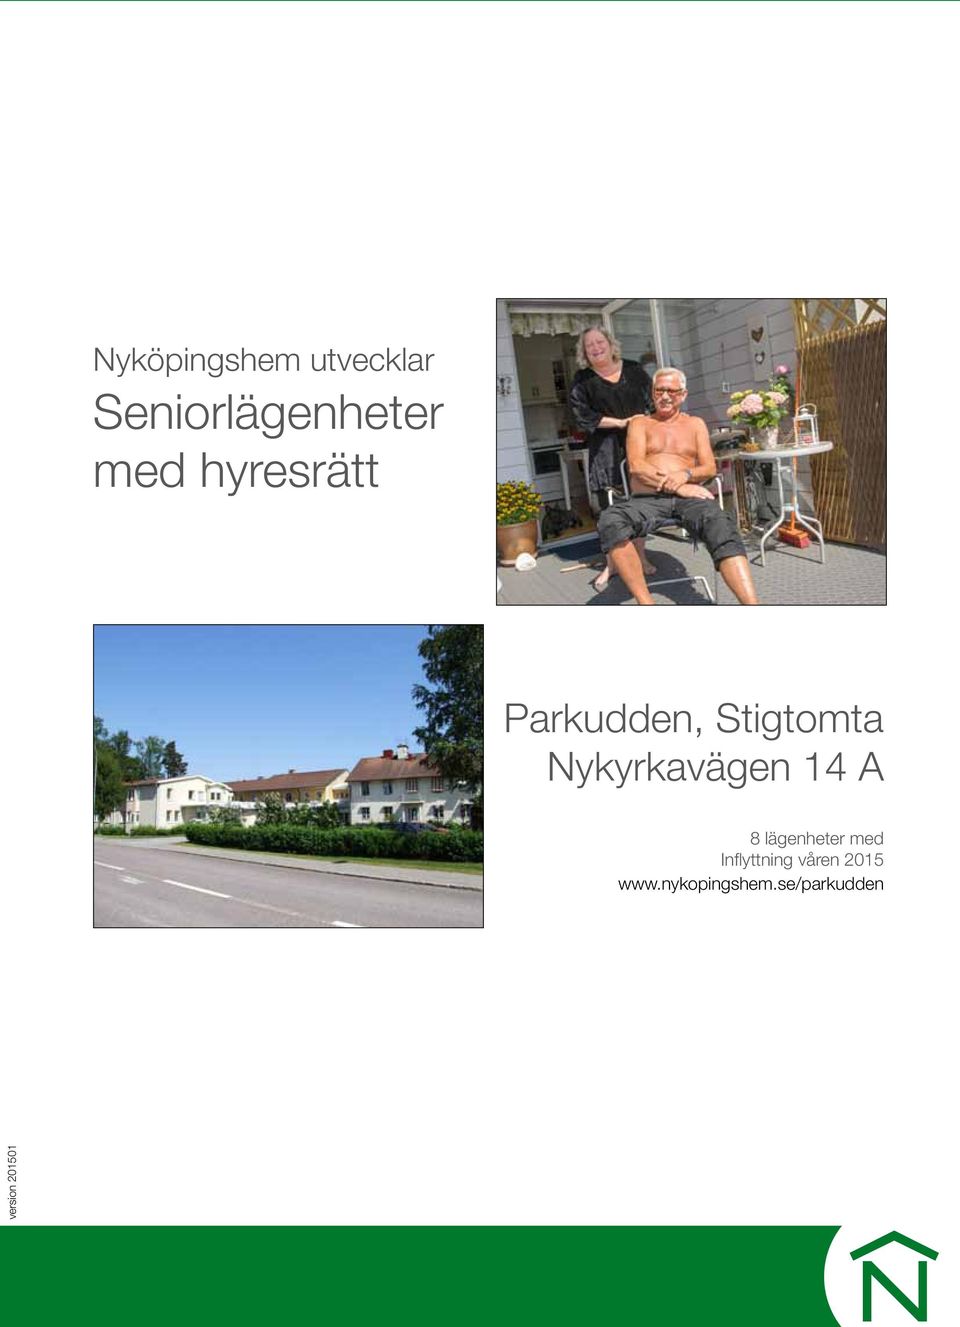 14 A 8 lägenheter med Inflyttning våren 2015